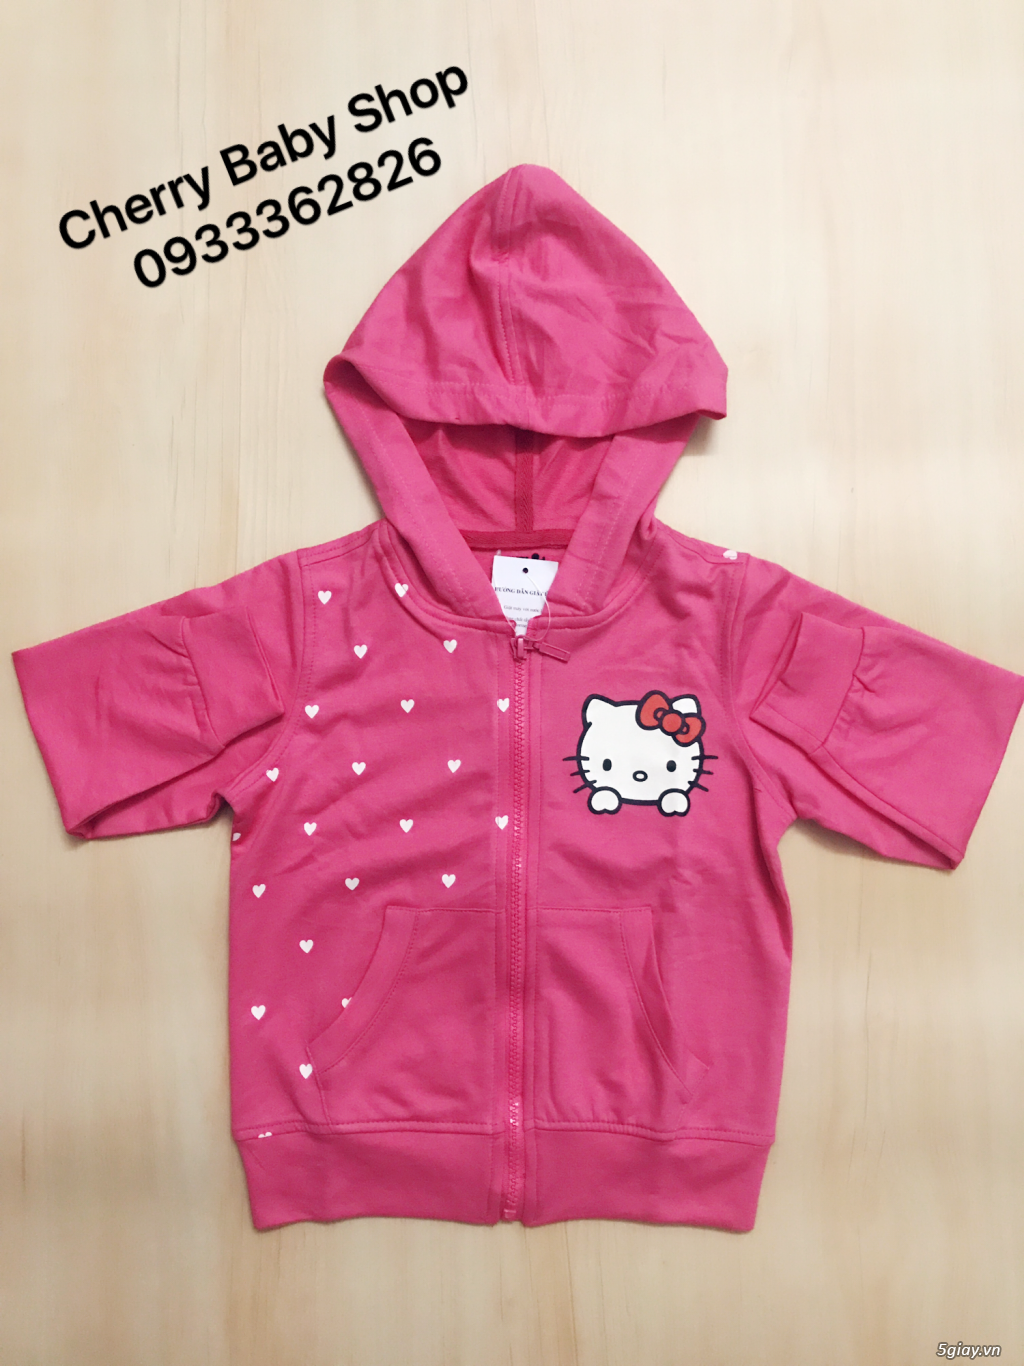 Cherry baby shop:: Chuyên thời trang trẻ em đẹp và chất lượng, sỉ-lẻ!! - 11